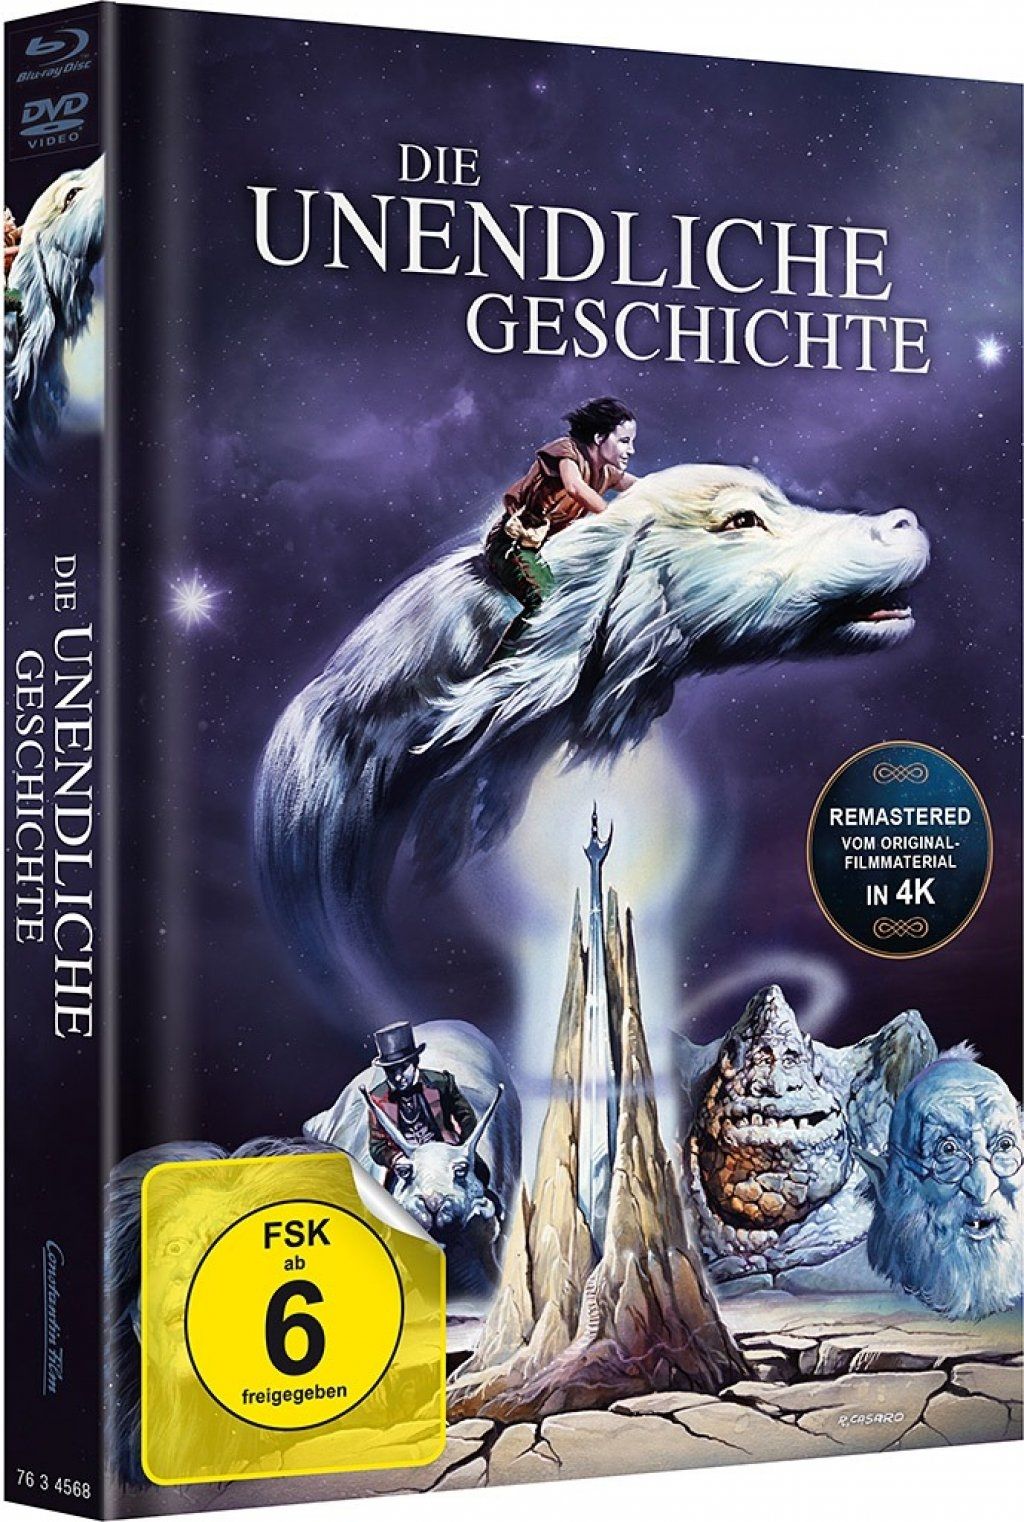 Unendliche Geschichte, Die (Lim. Uncut Mediabook - Cover A) (DVD + BLURAY)